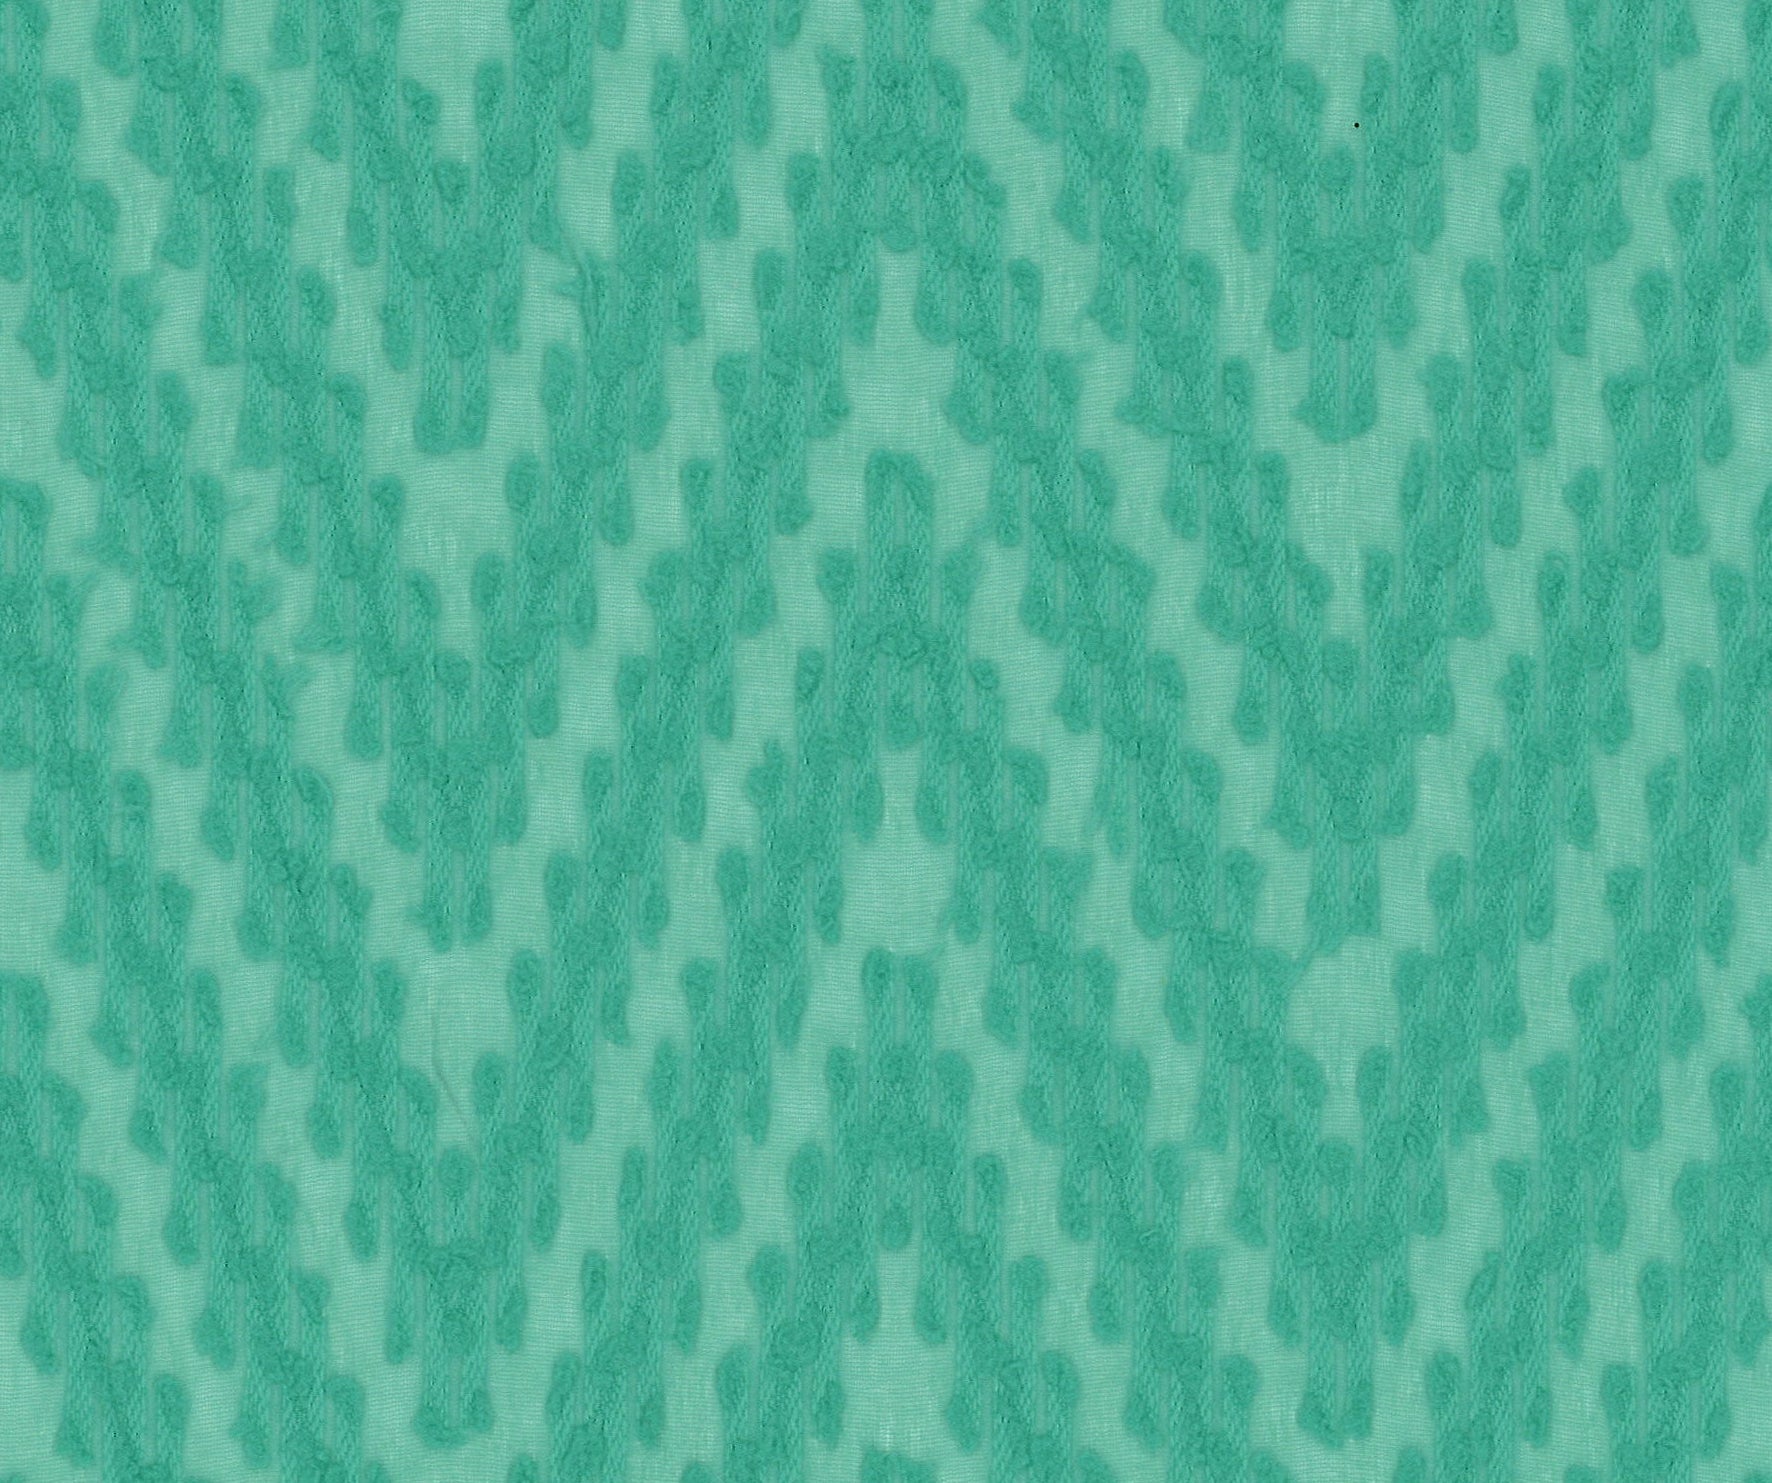 9958-04 Marine Green Polyester Chiffon Winding Pattern Jacquard Plain Dyed 100% 110g/yd 58&quot; chiffon green jacquard plain dyed polyester woven Chiffon, Jacquard - knit fabric - woven fabric - fabric company - fabric wholesale - fabric b2b - fabric factory - high quality fabric - hong kong fabric - fabric hk - acetate fabric - cotton fabric - linen fabric - metallic fabric - nylon fabric - polyester fabric - spandex fabric - chun wing hing - cwh hk - fabric worldwide ship - 針織布 - 梳織布 - 布料公司- 布料批發 - 香港布料 - 秦榮興